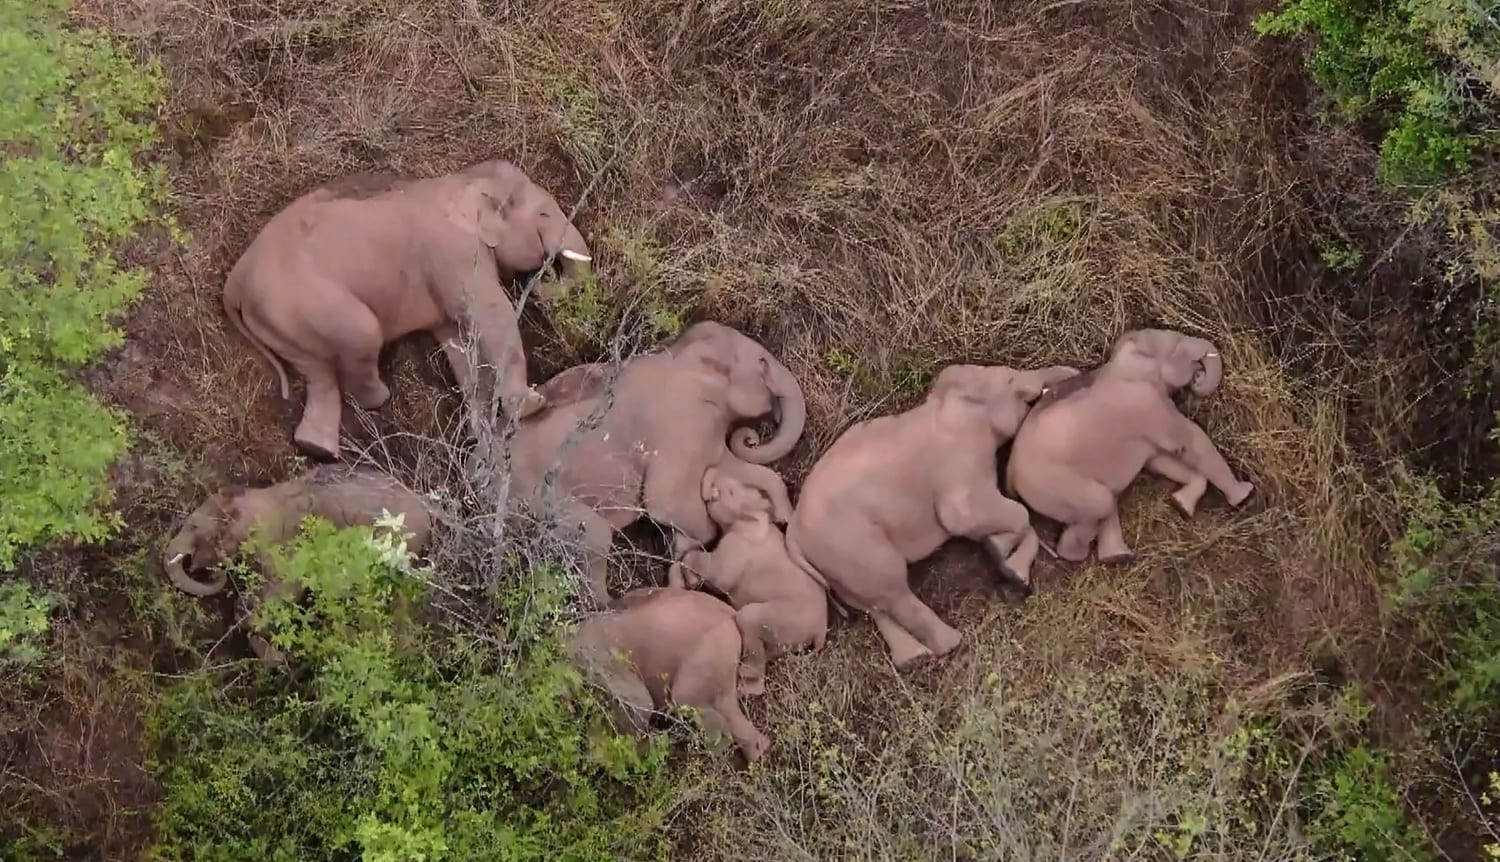 An elephant family asleep